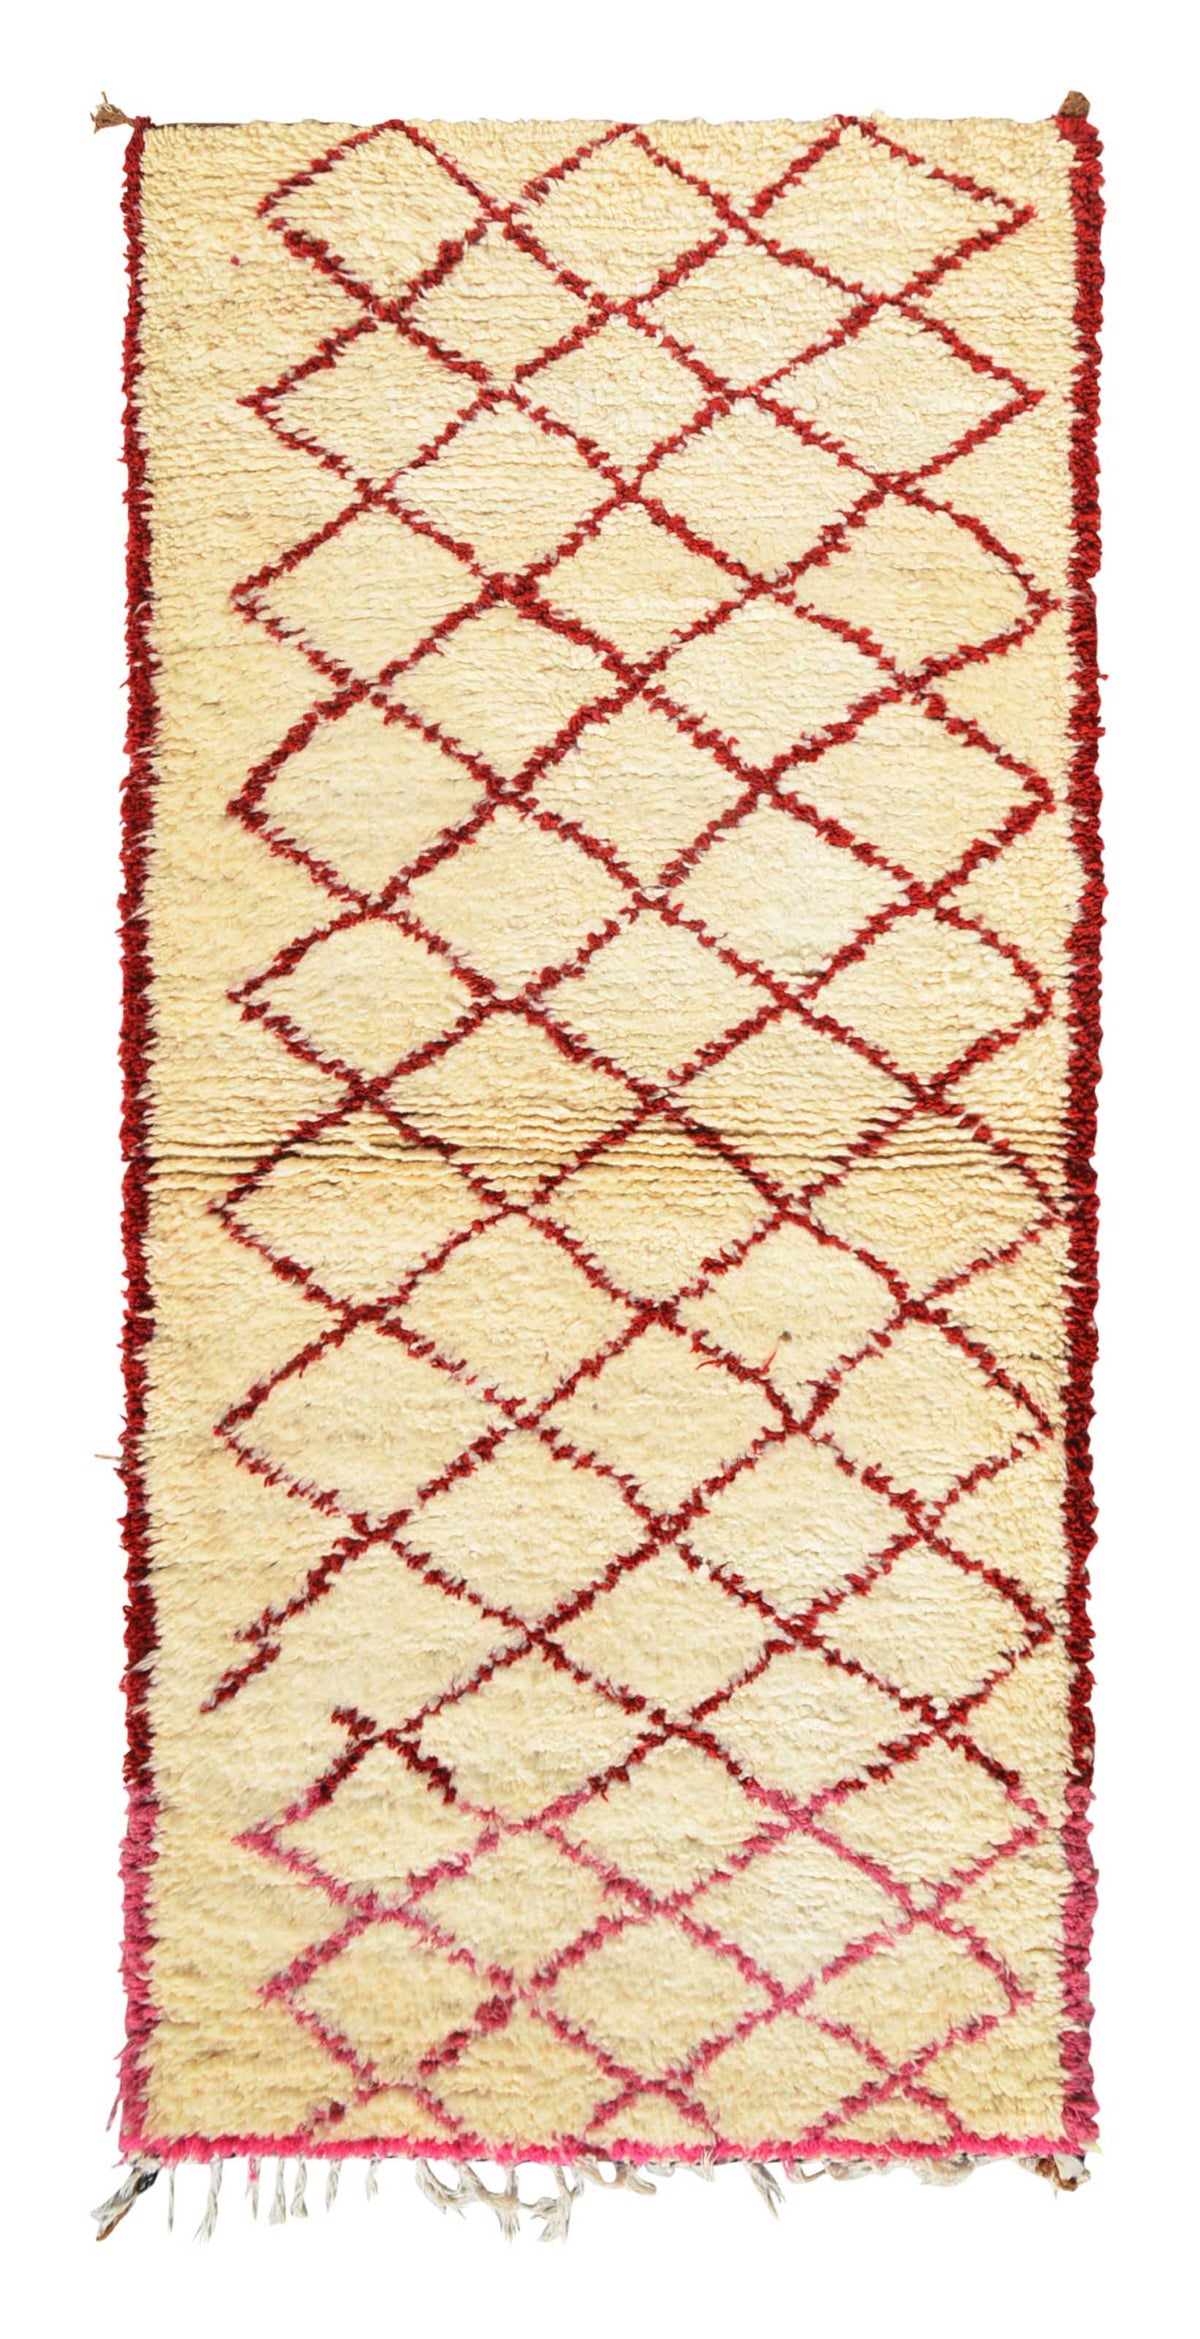 Vintage Moroccan Rug Vintage Moroccan Rug | Wool Shag Rug | Vintage Wool Rugs | Illuminate Collective illuminate collective 